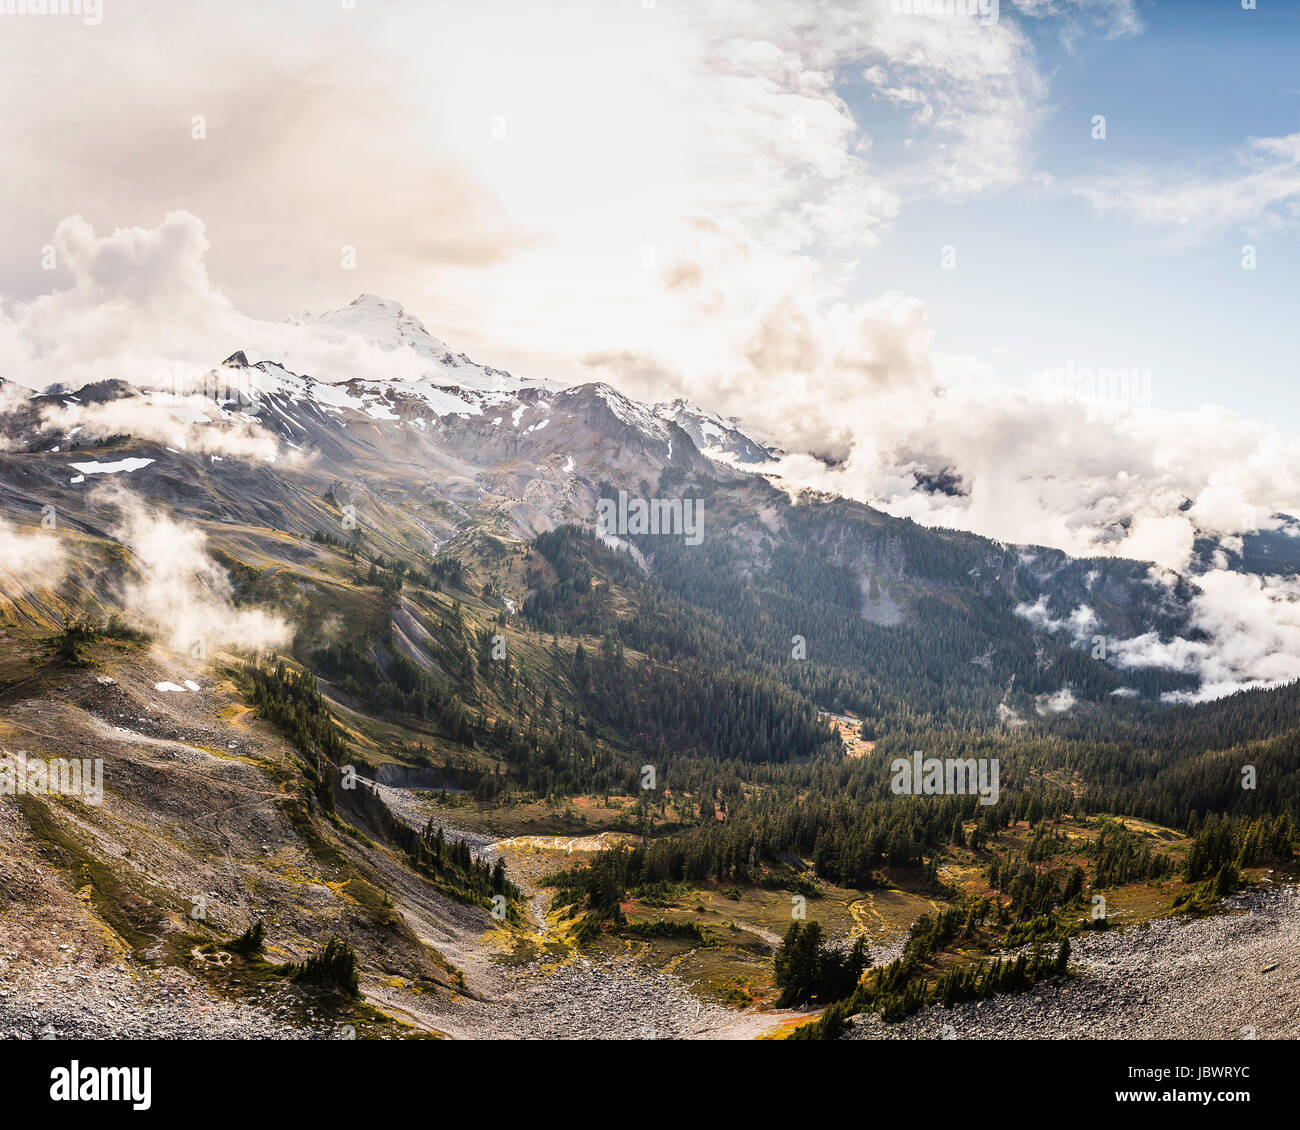 Snow covered mountain peaks, Mount Baker, Washington, USA Stock Photo